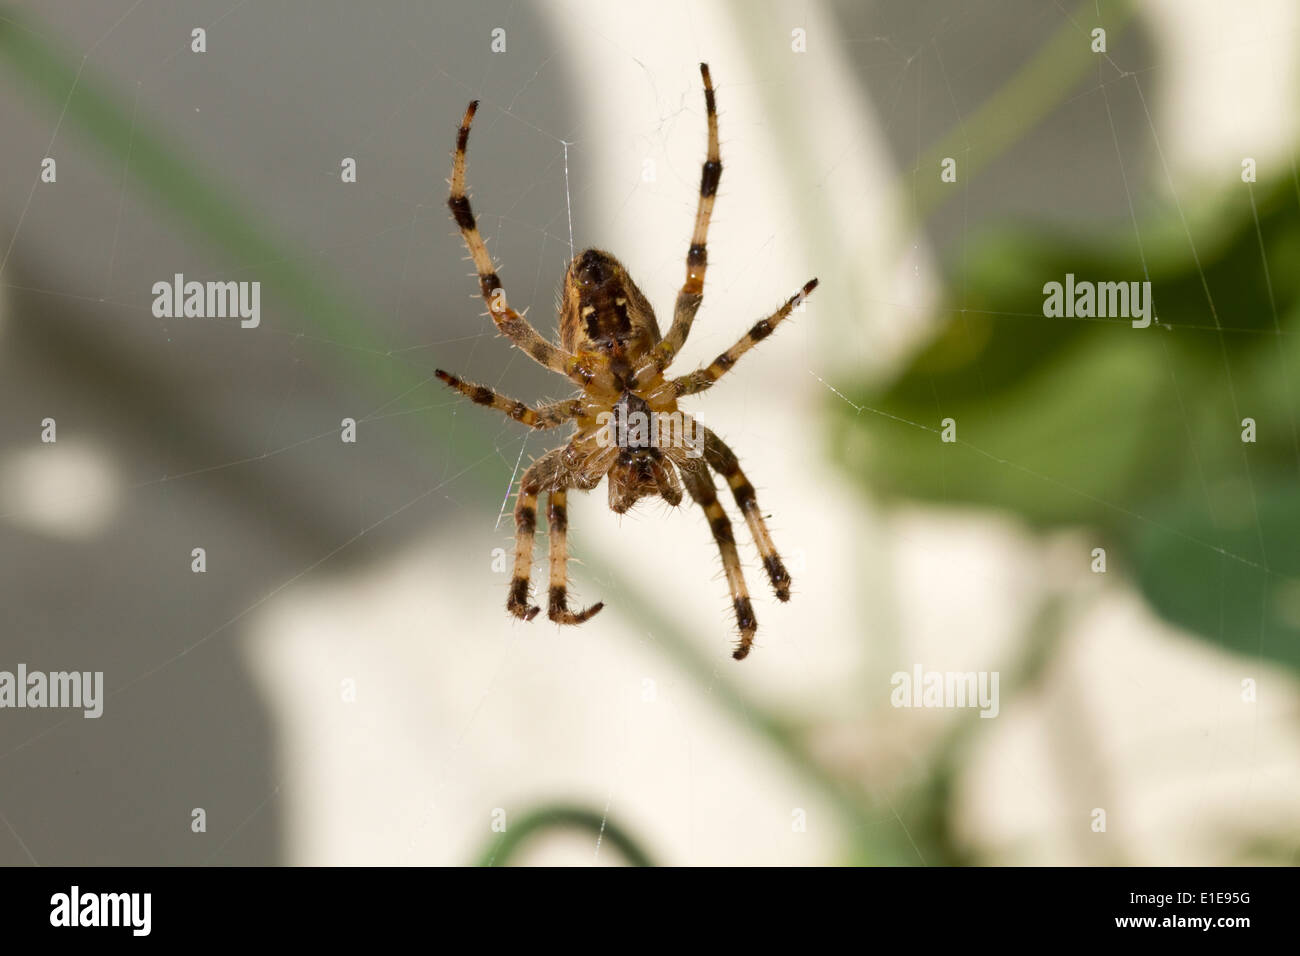 Garden orb spider in web Stock Photo